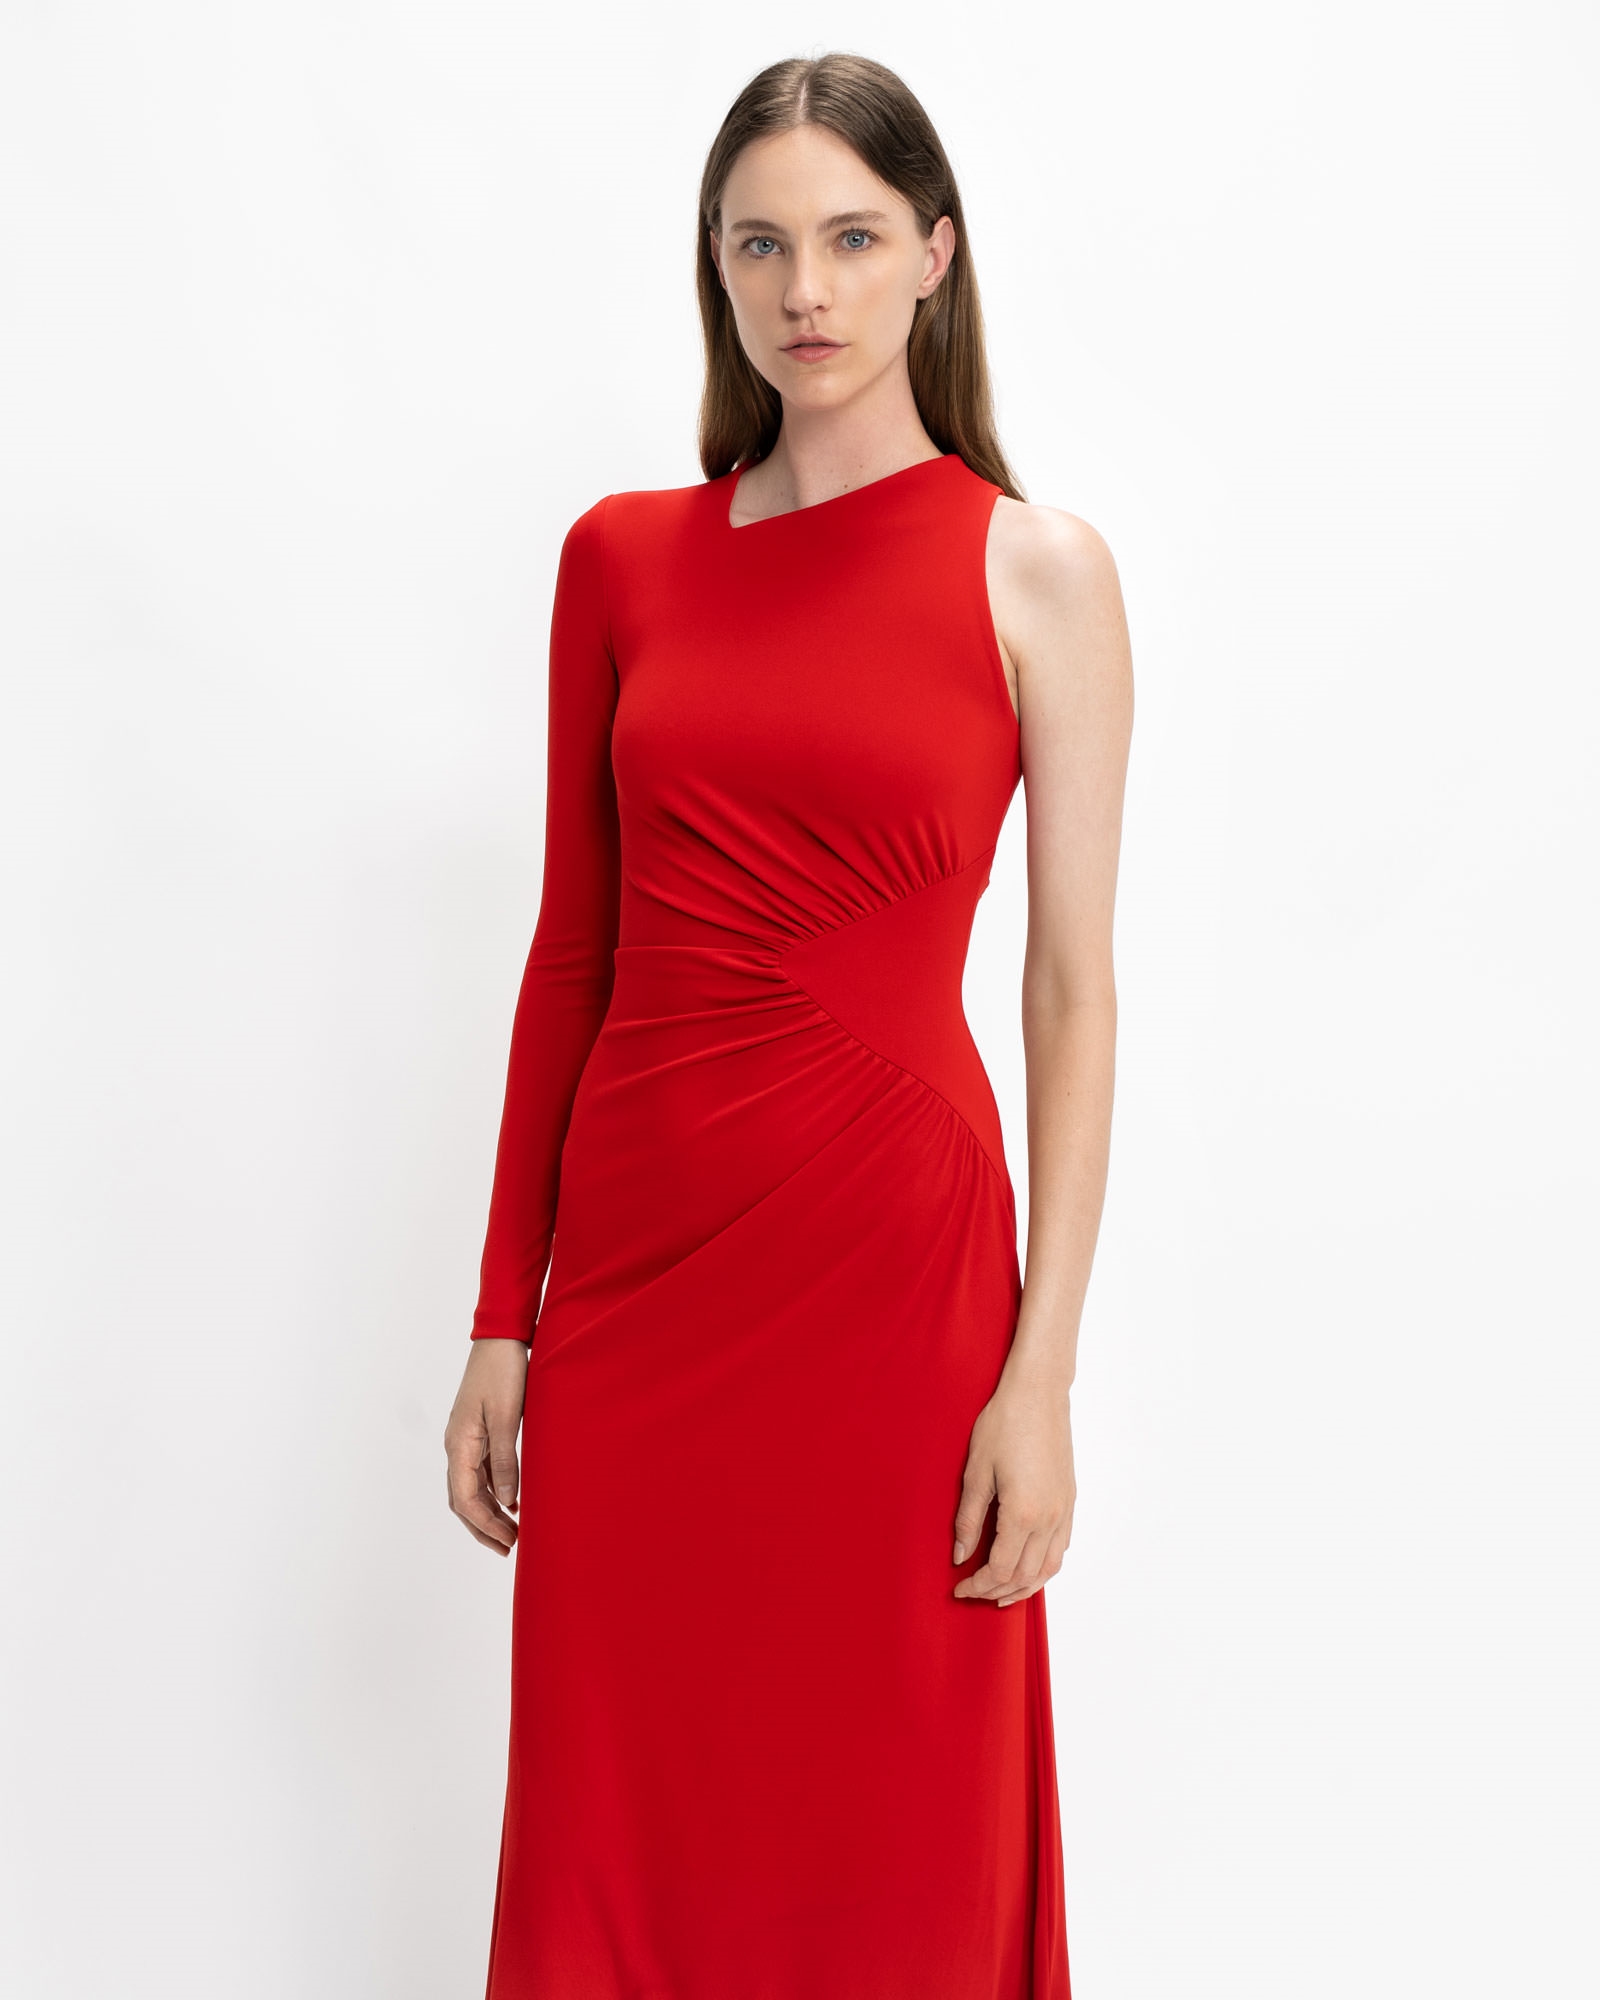 Dresses | Scarlet One Shoulder Dress | 627 Scarlet